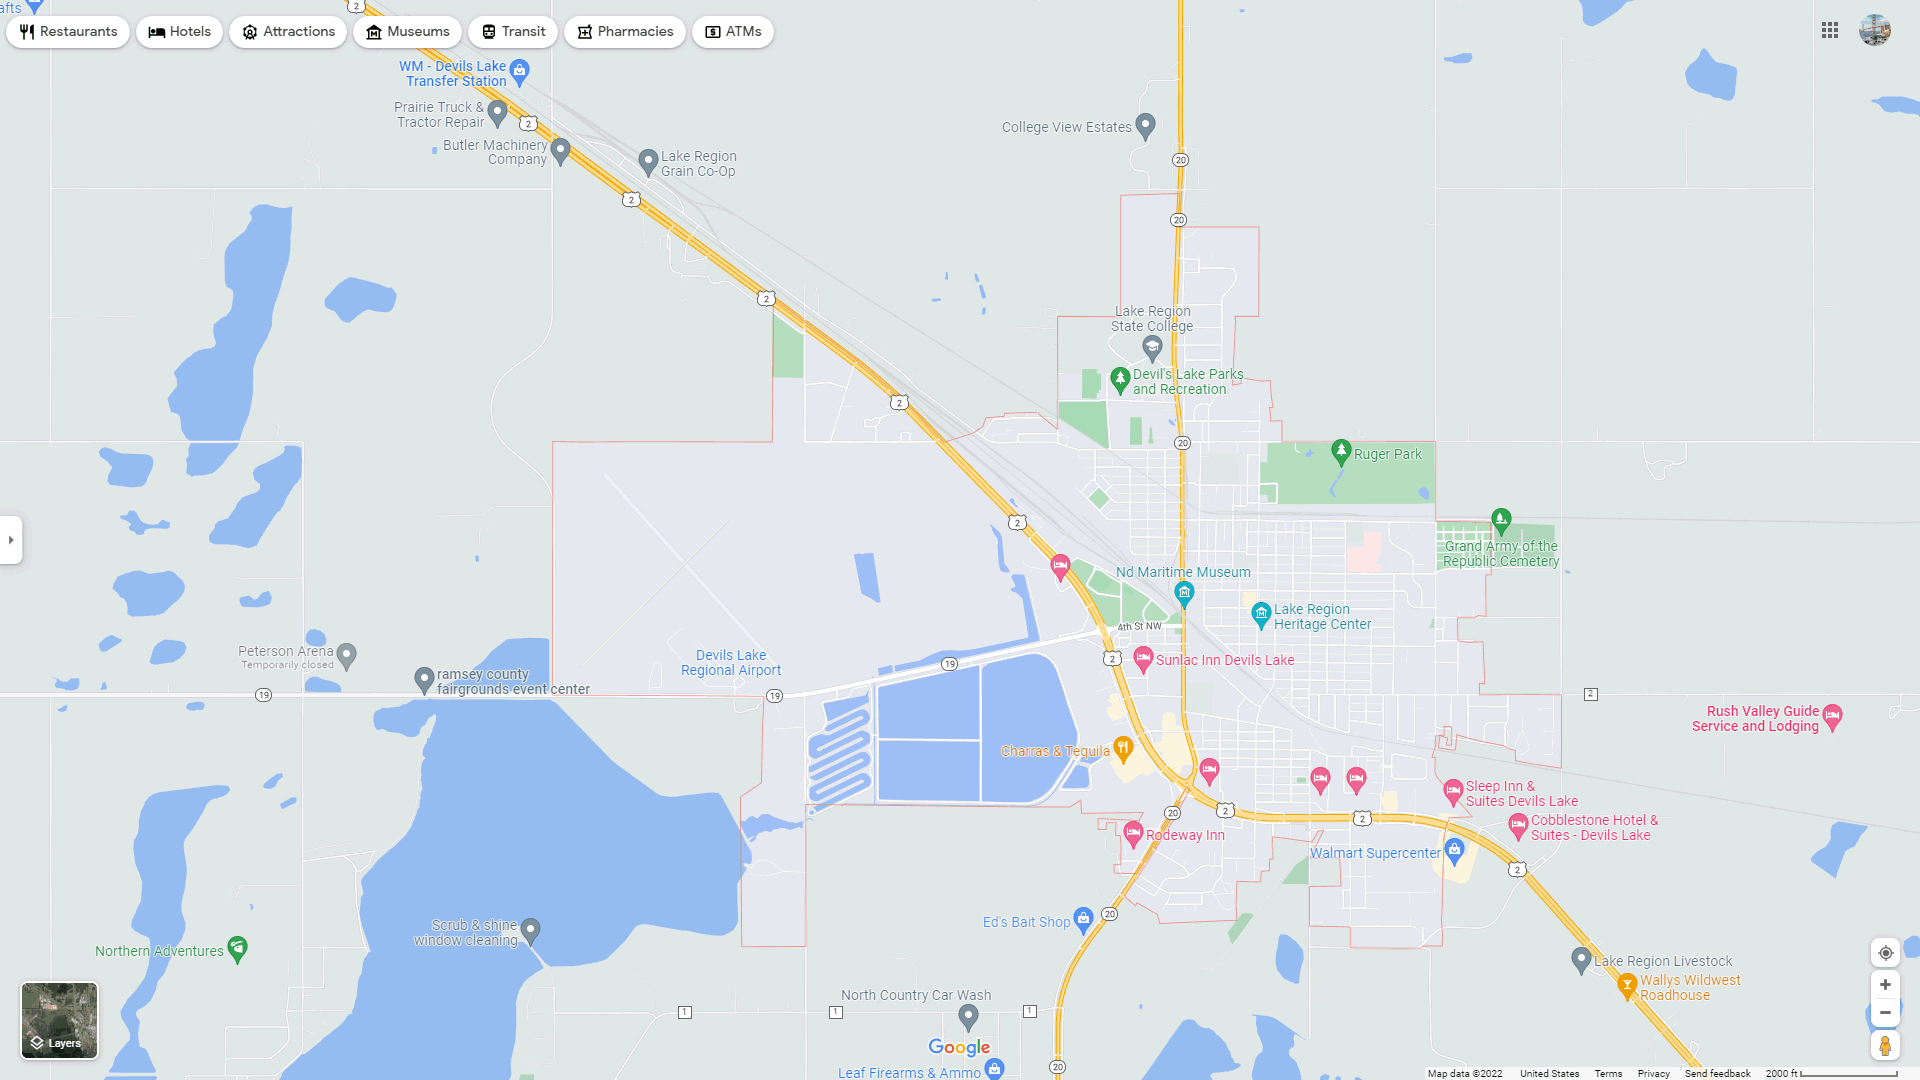 Devils Lake map